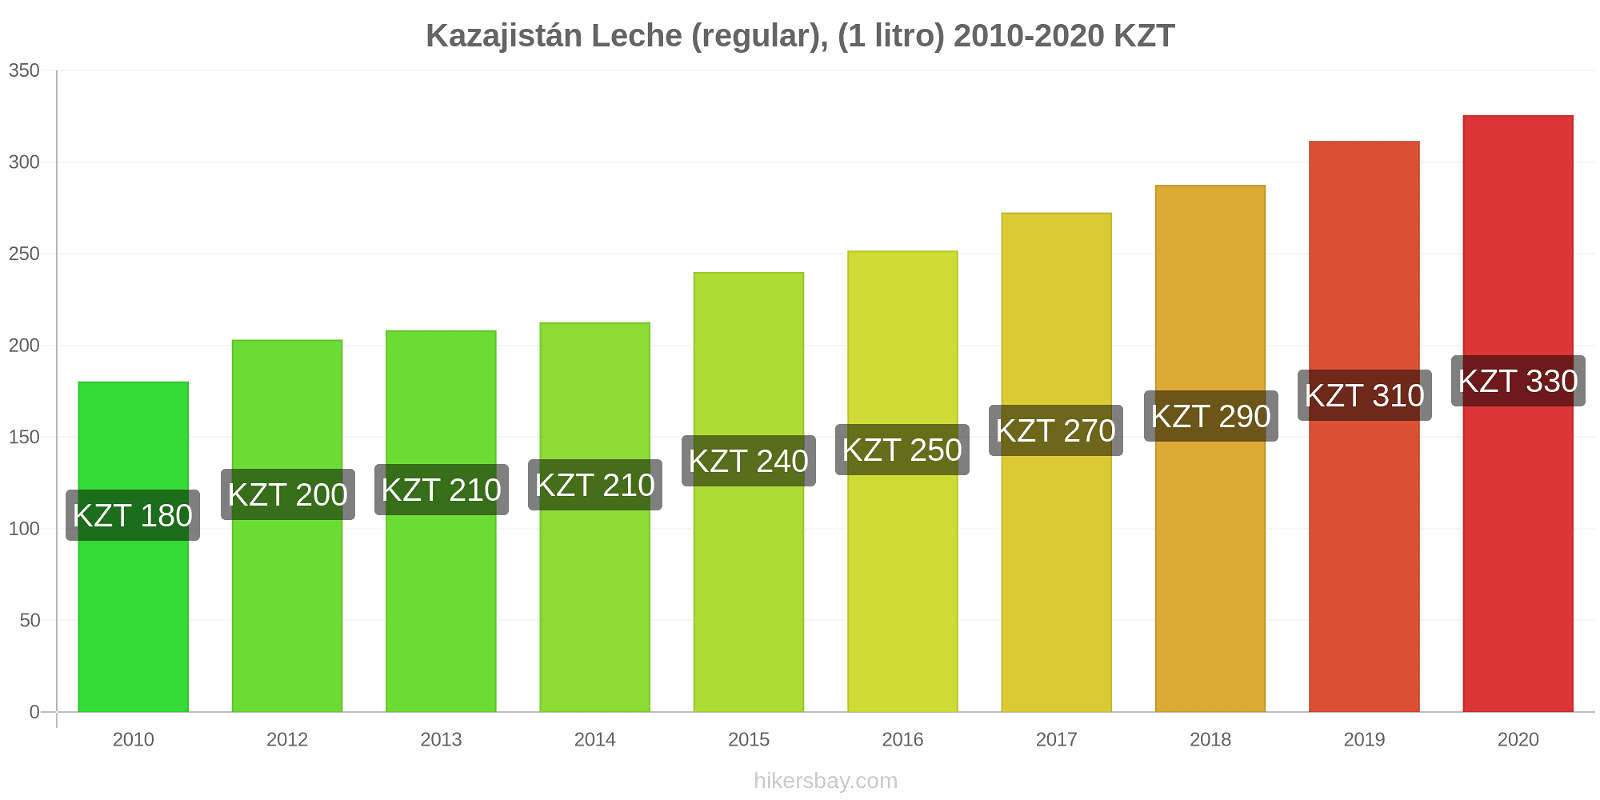 Kazajistán cambios de precios Leche (Regular), (1 litro) hikersbay.com